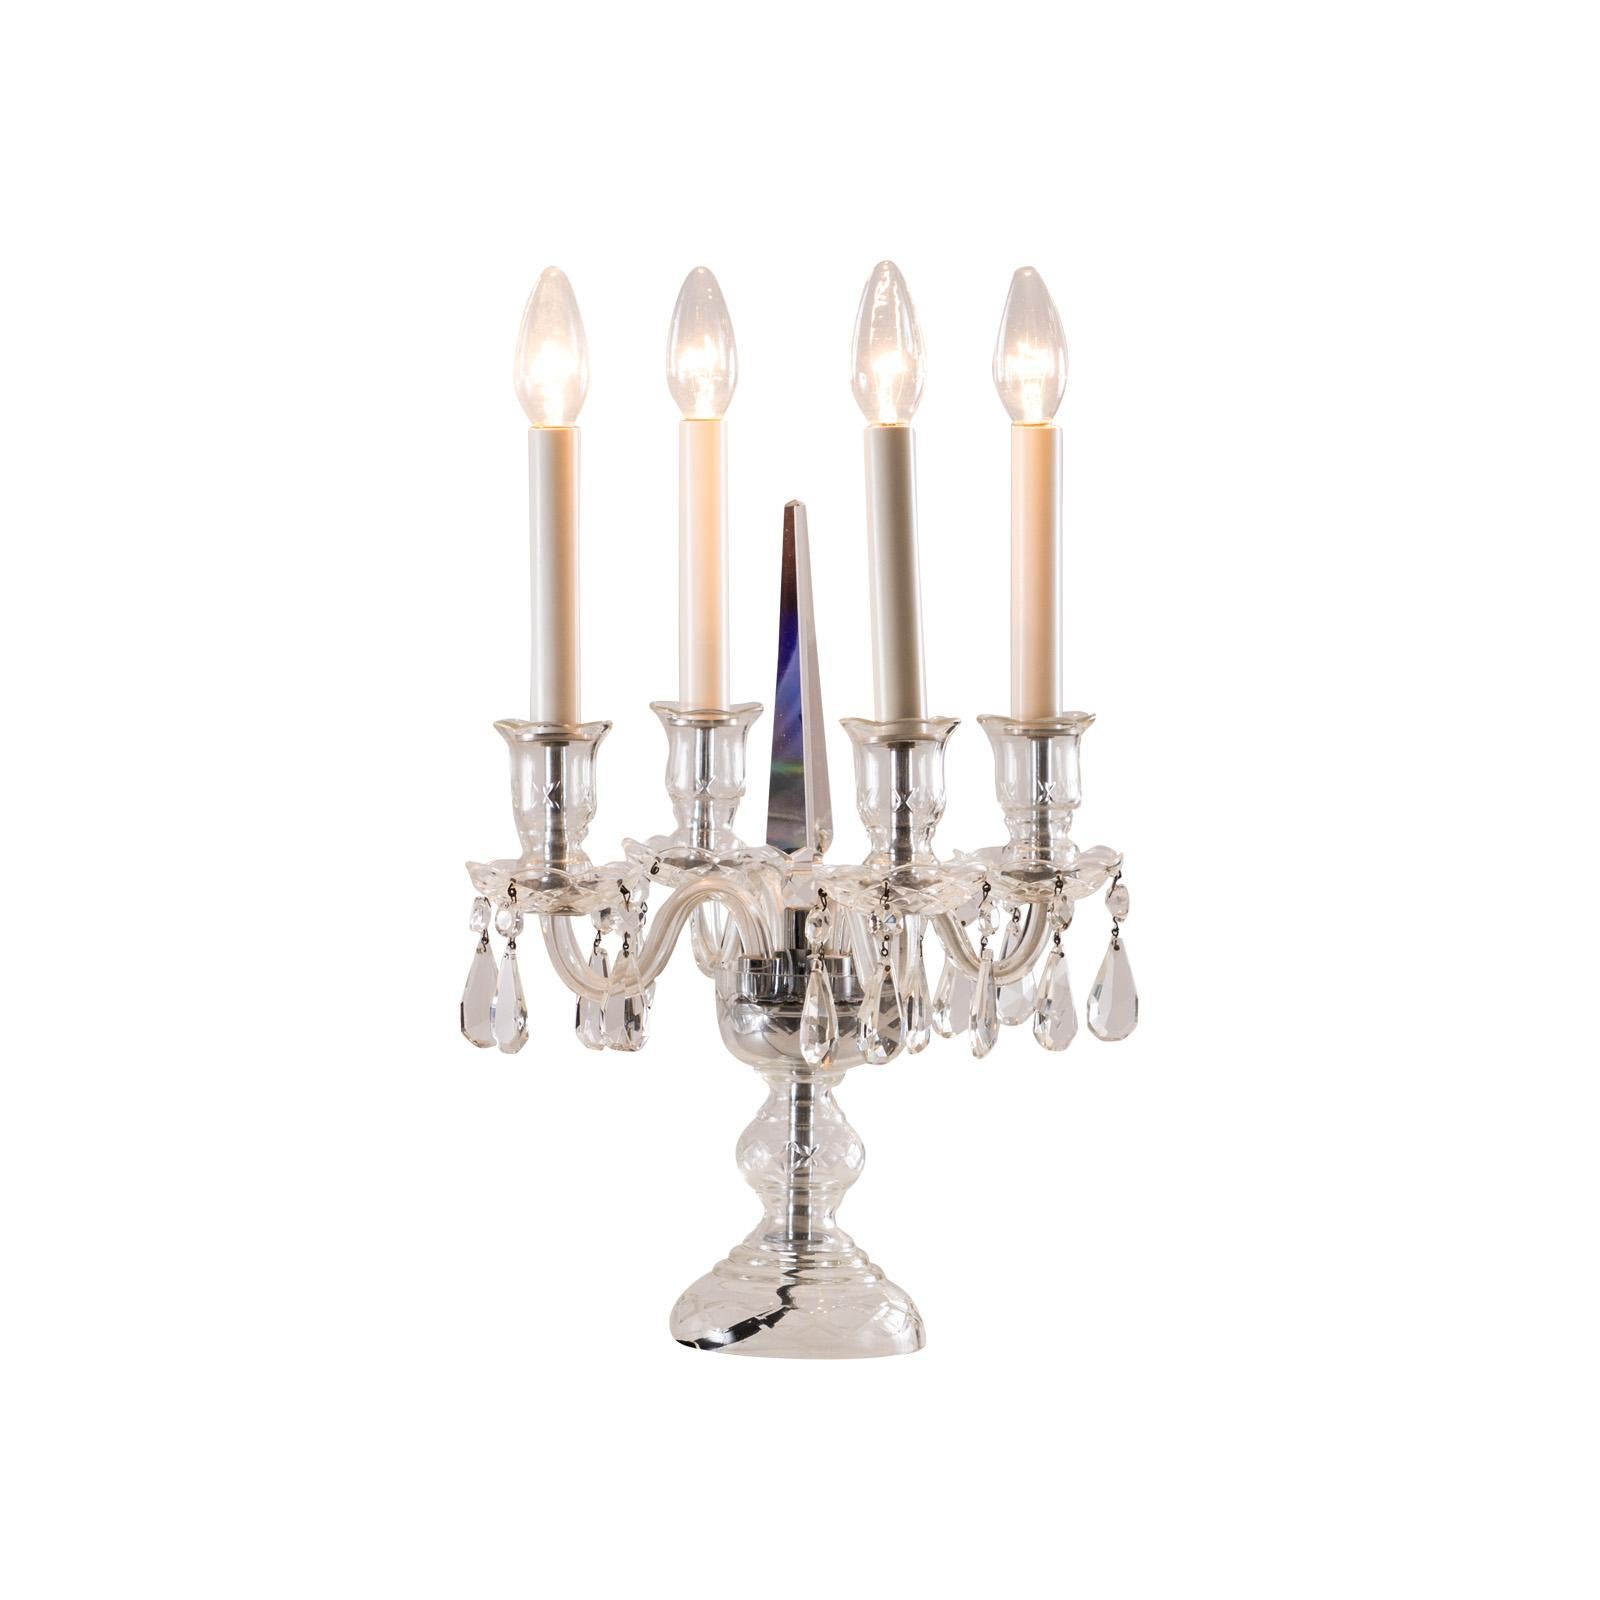 Jugendstil Original Early 20th Century Crystal Candelabra Table Lamp  For Sale